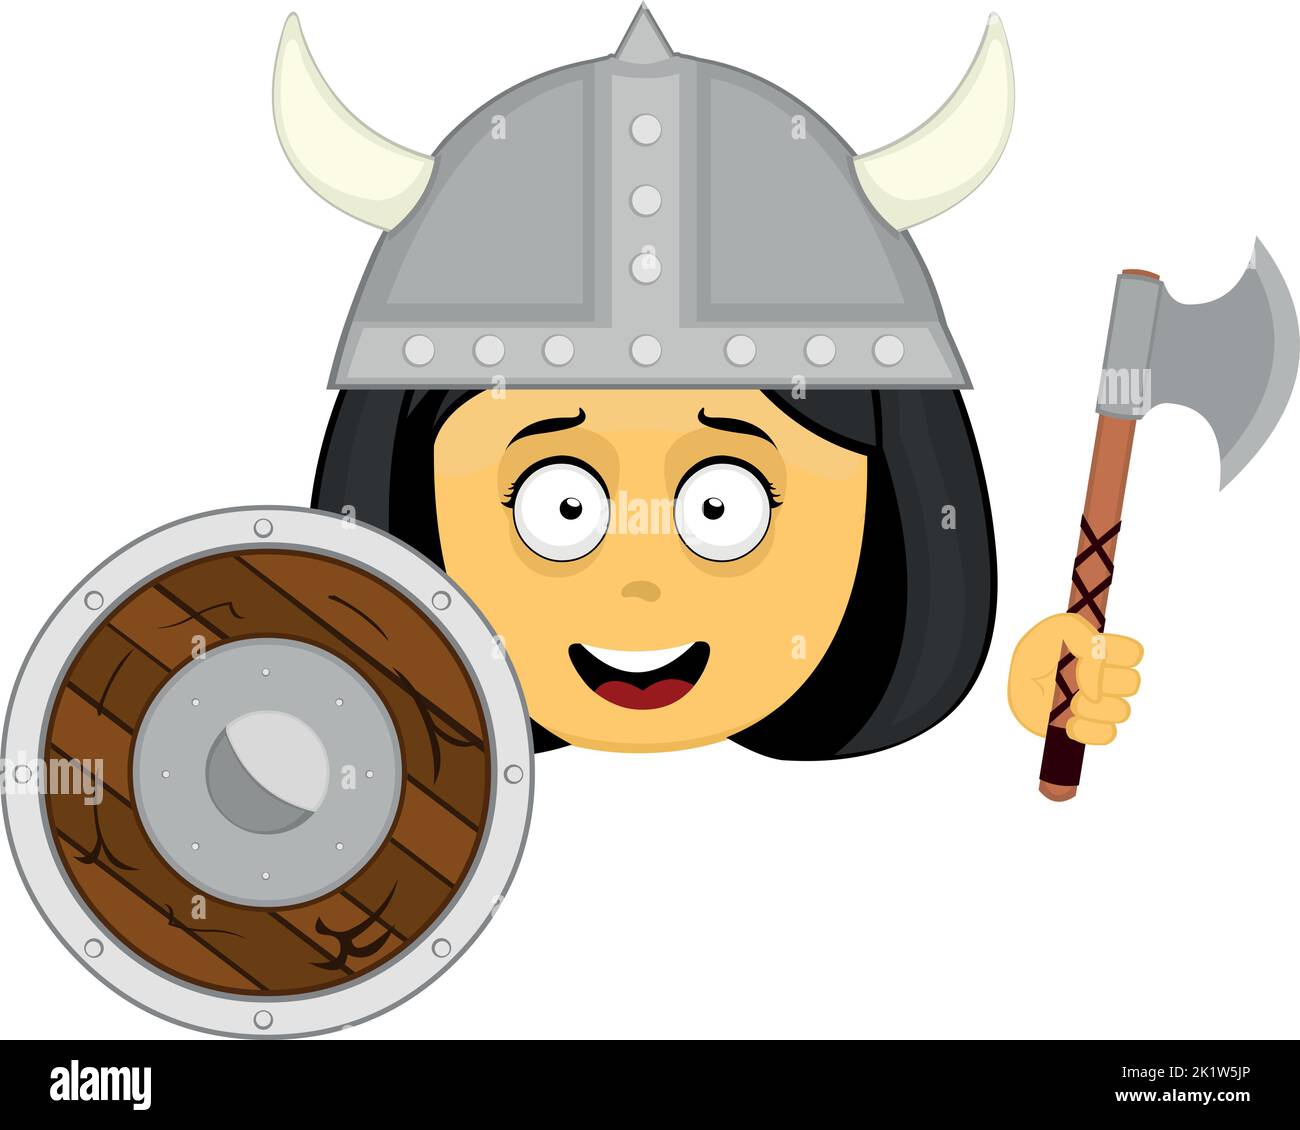 Hache de guerre viking Banque d'images vectorielles - Page 2 - Alamy